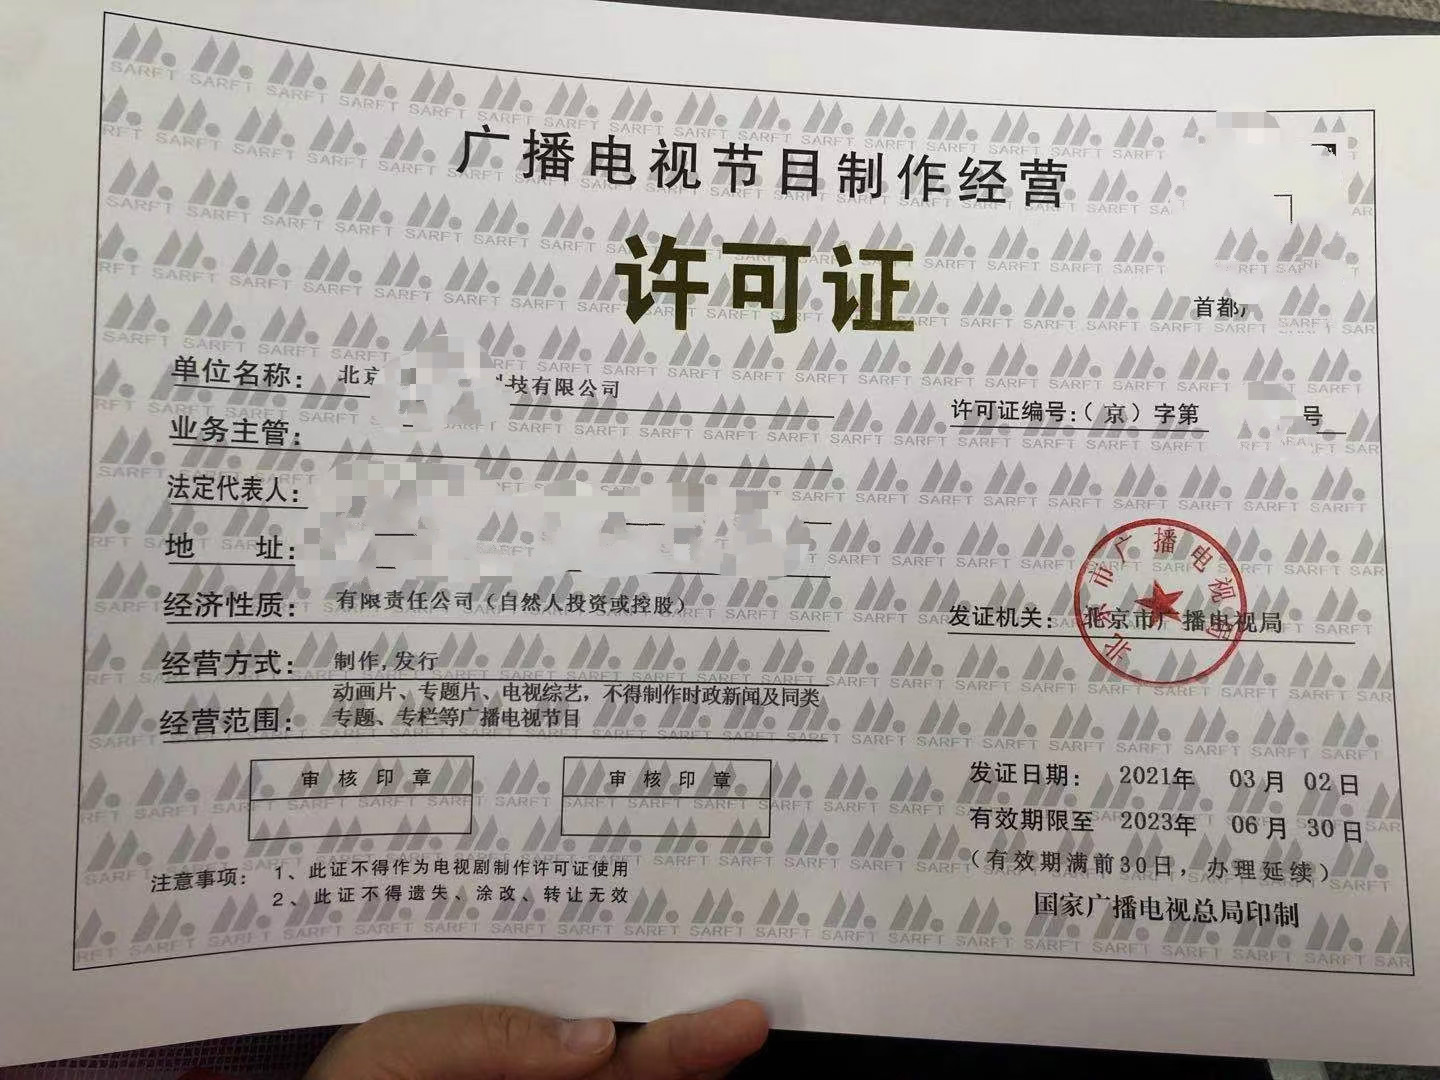 如下是针对于准备申请北京广播电视节目许可证的材料